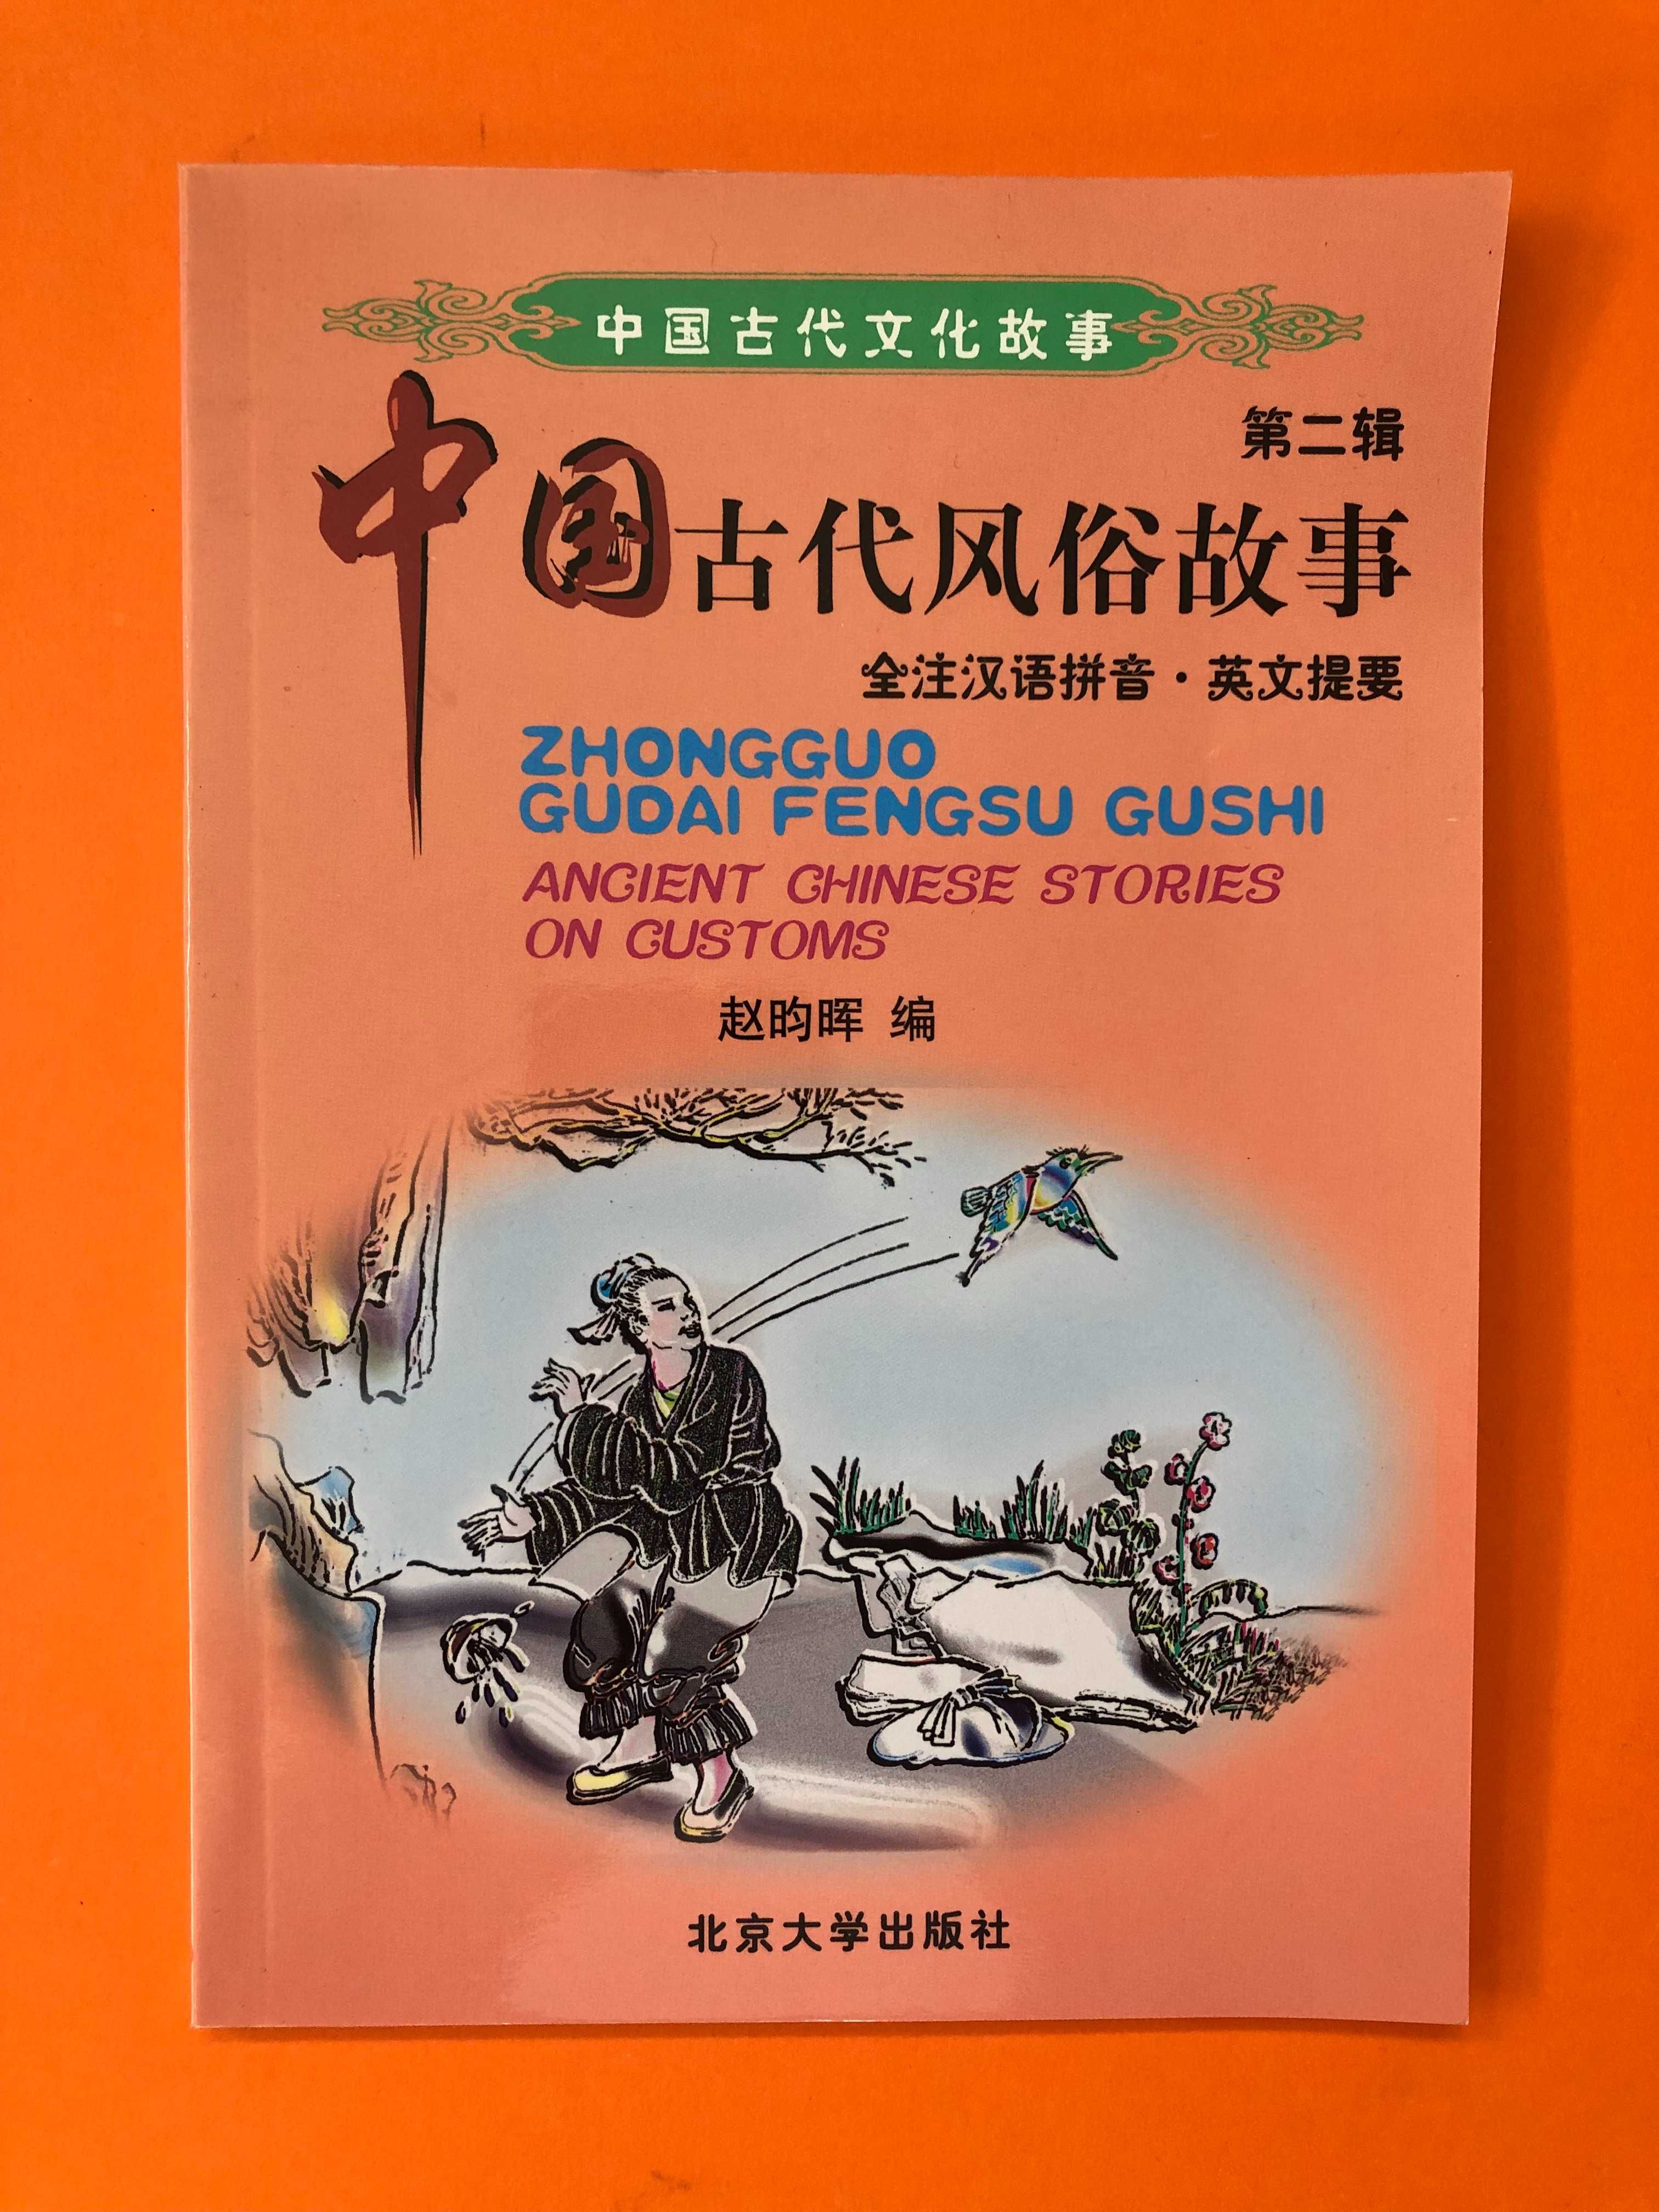 zhongguo gudai fengsu gushi / Ancient Chinese Stories on customs